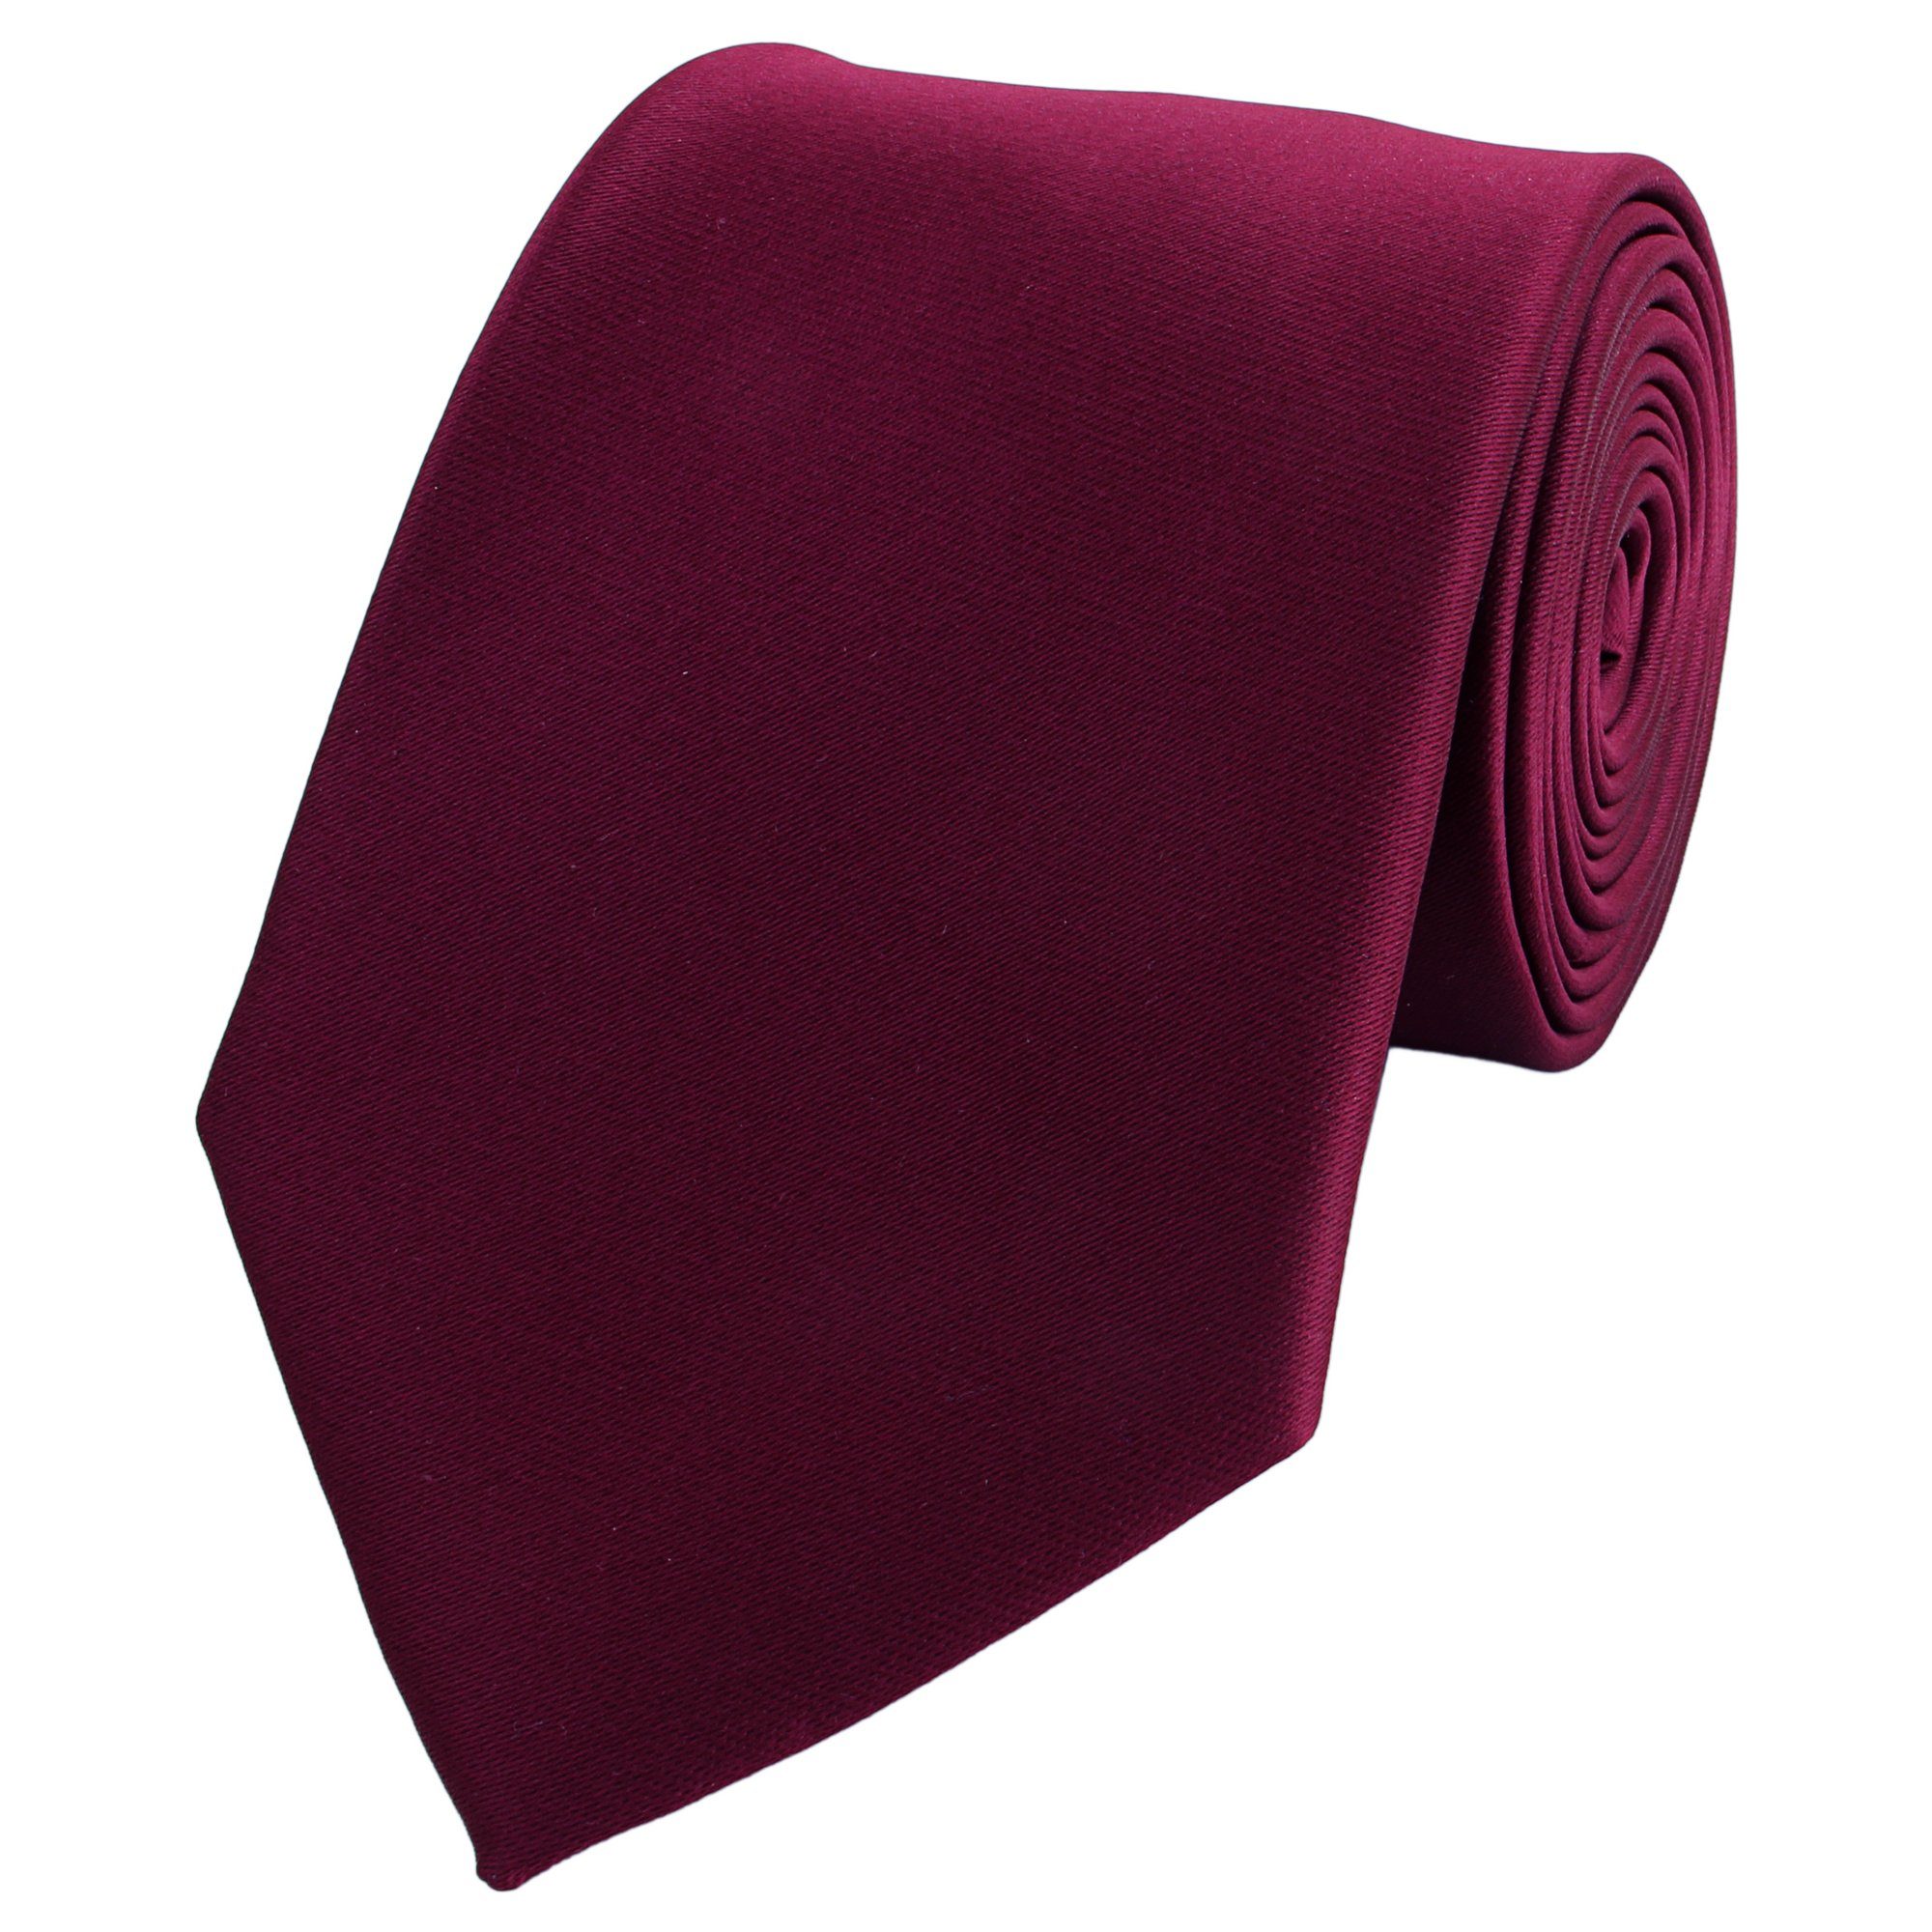 Fabio Farini Krawatte Herren Krawatte Rot - verschiedene Rote Männer Schlips in 8cm (ohne Box, Unifarben) Breit (8cm), Weinrot - Red Wine